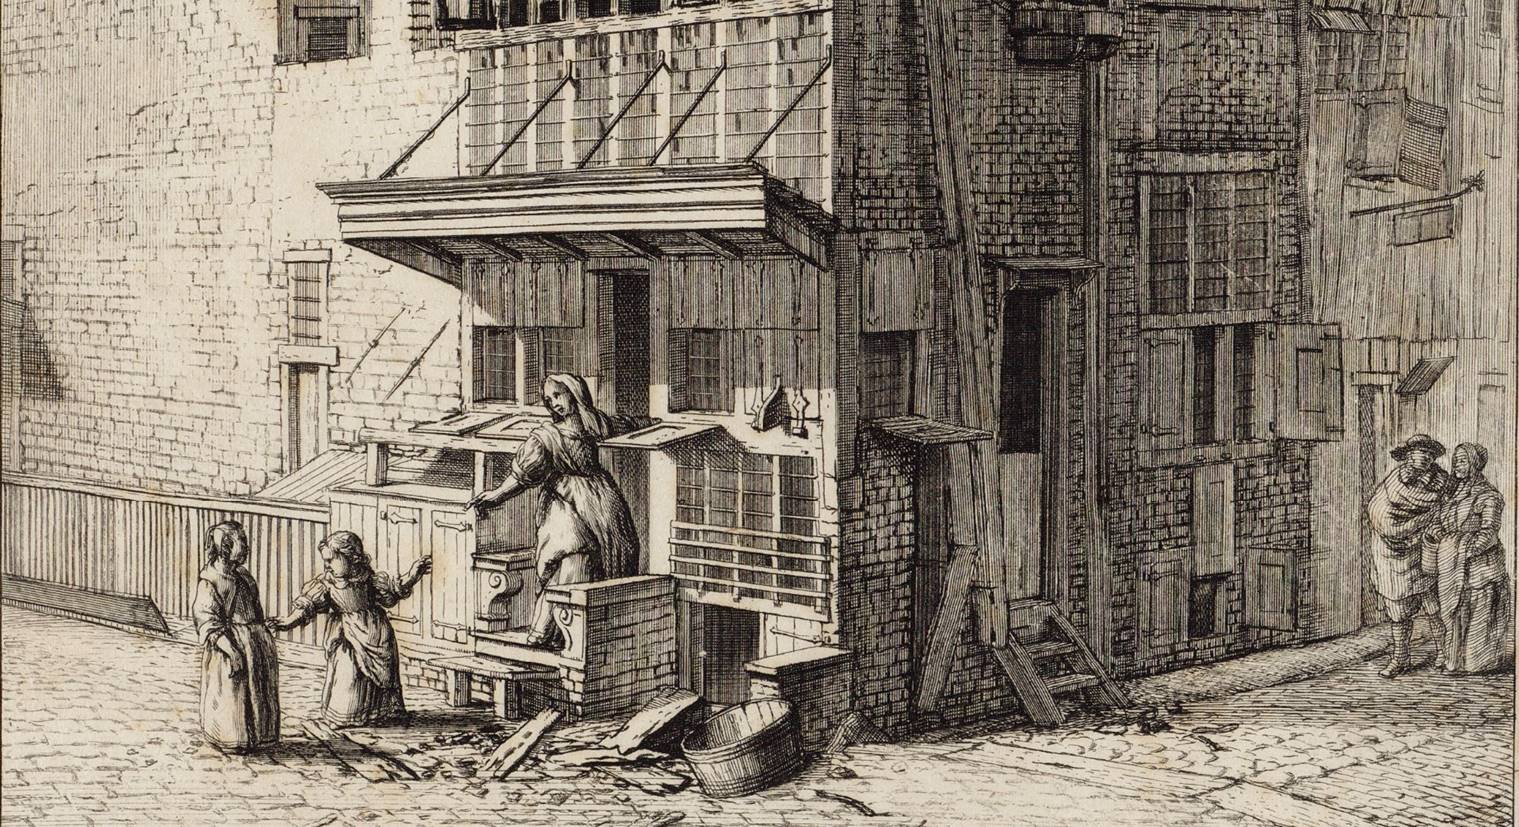 Prent door Jan van der Heyden uit 1690 met afbeelding van een huis in de Bloet Straat, ''t welk van de tweede verdieping af tot den top toe teffens in brand geraakte (...)'